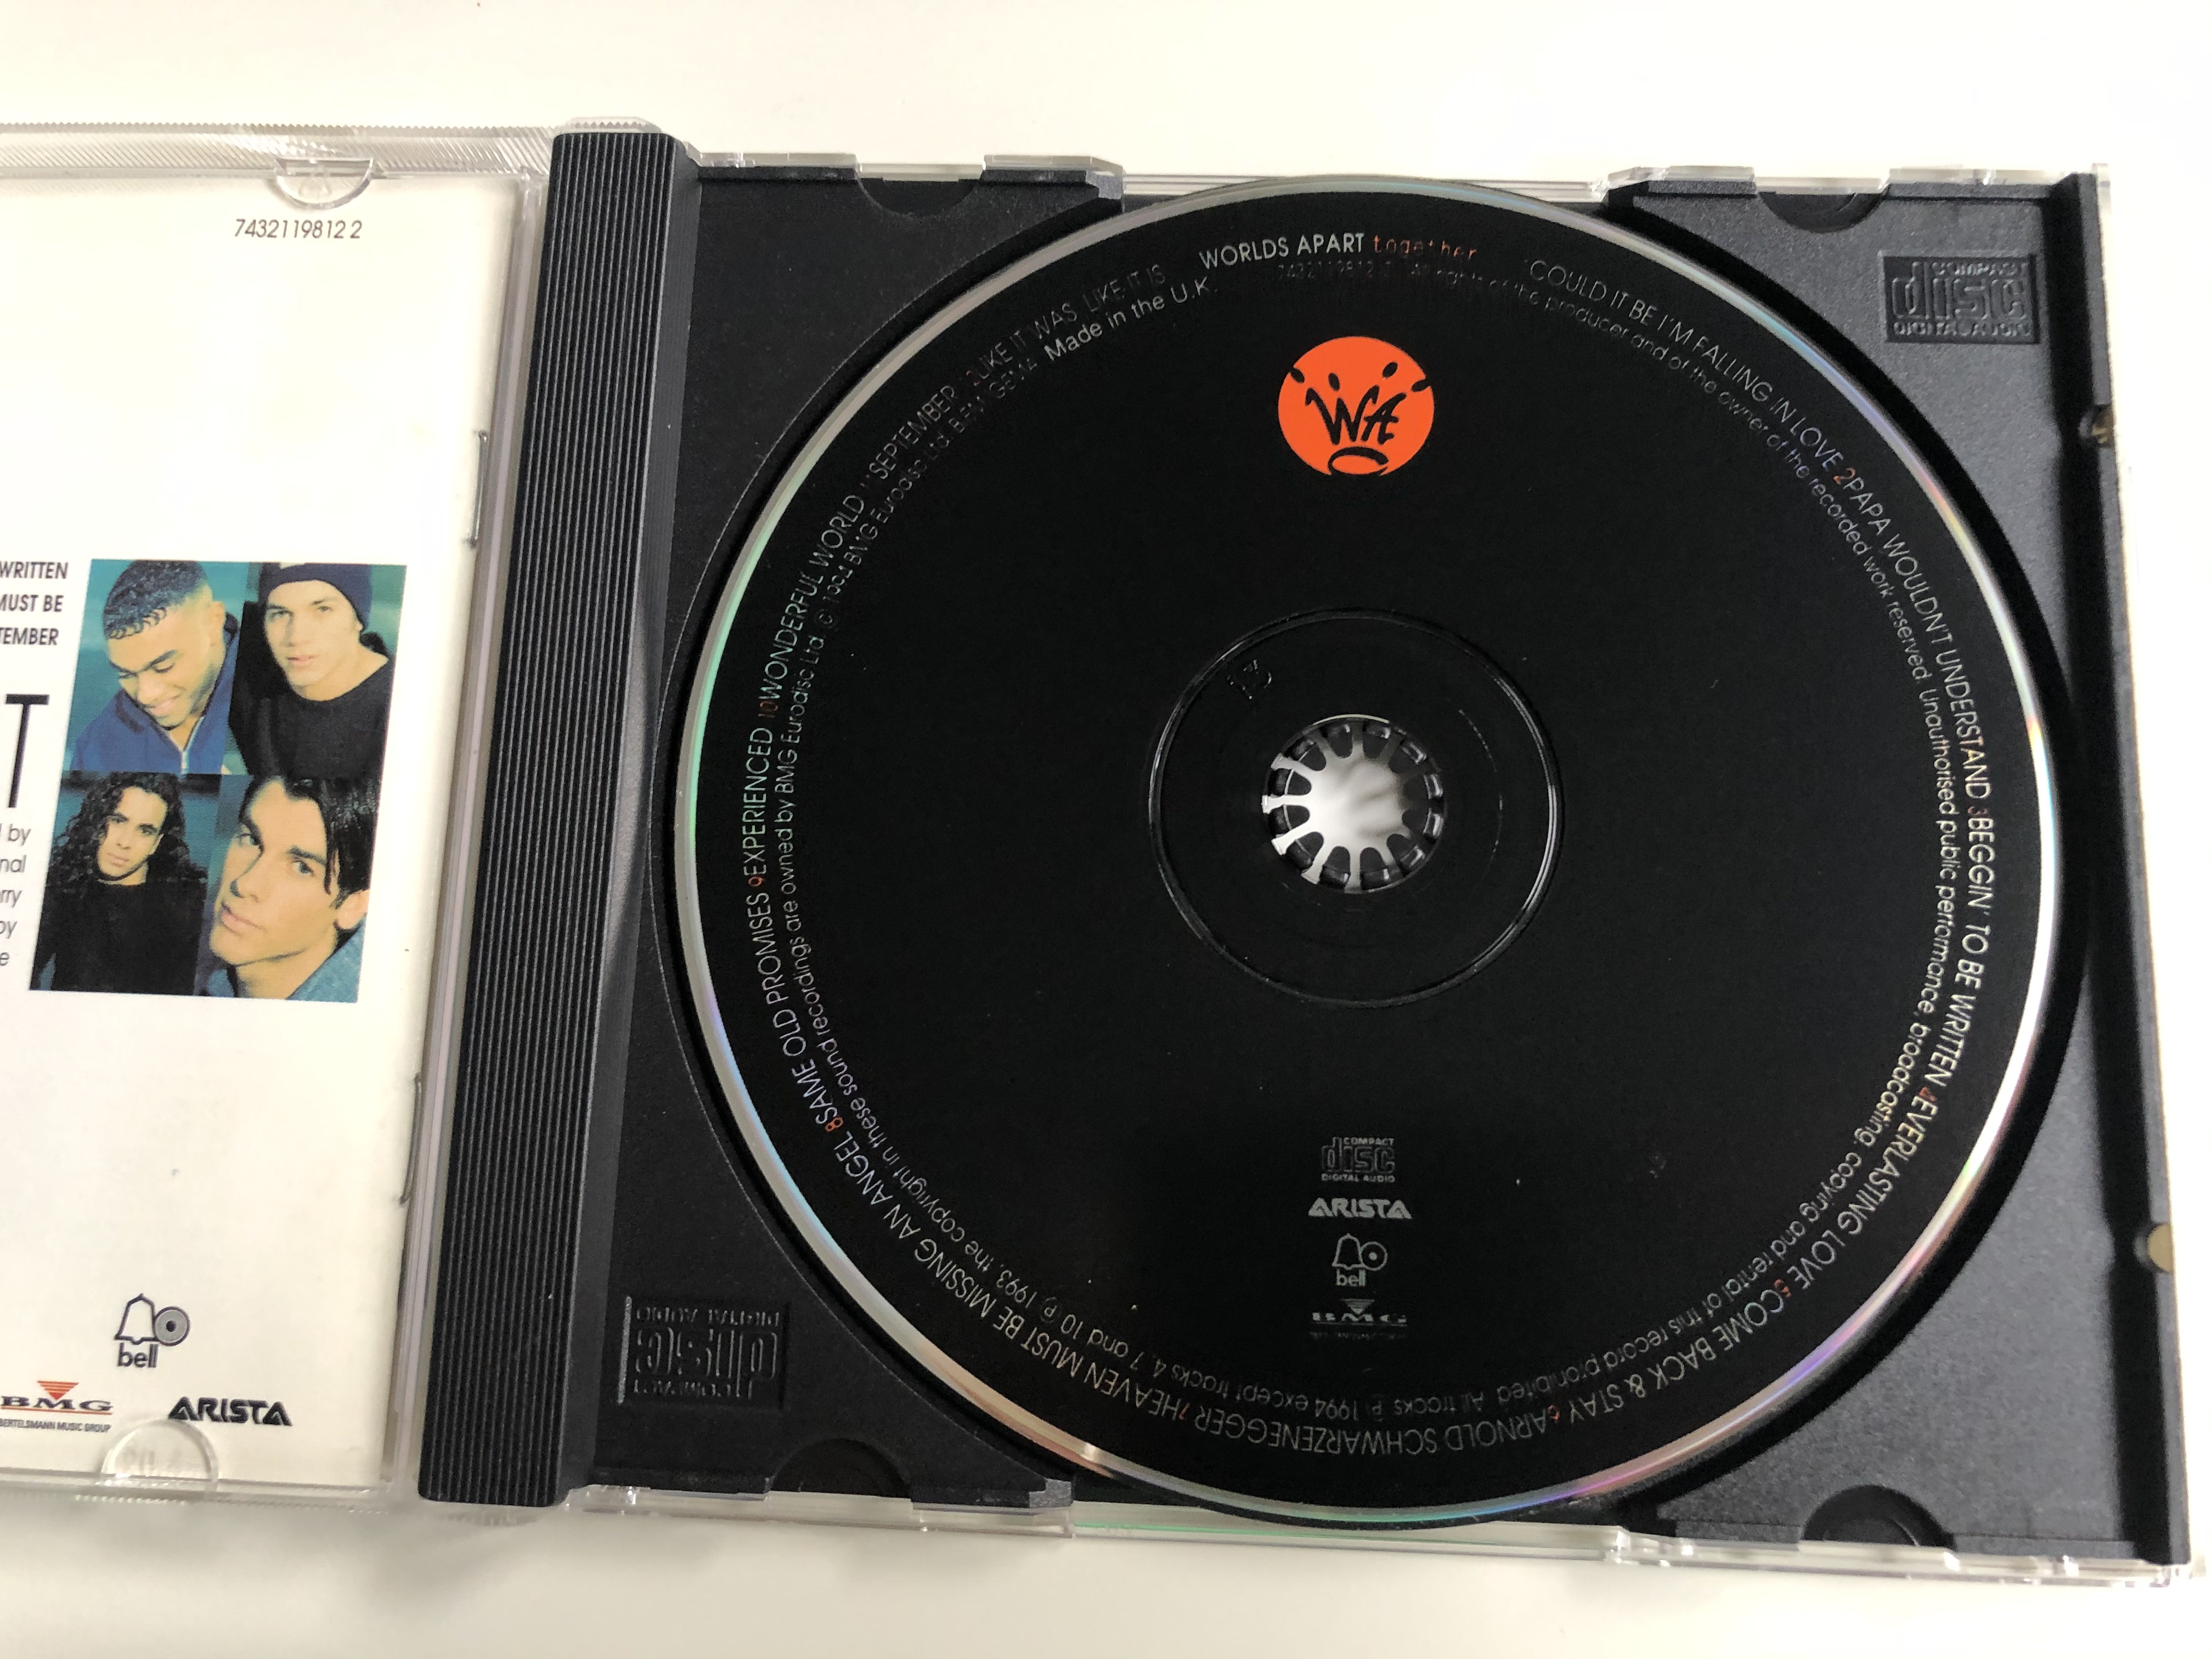 worlds-apart-together-arista-audio-cd-1994-7432119812-2-6-.jpg